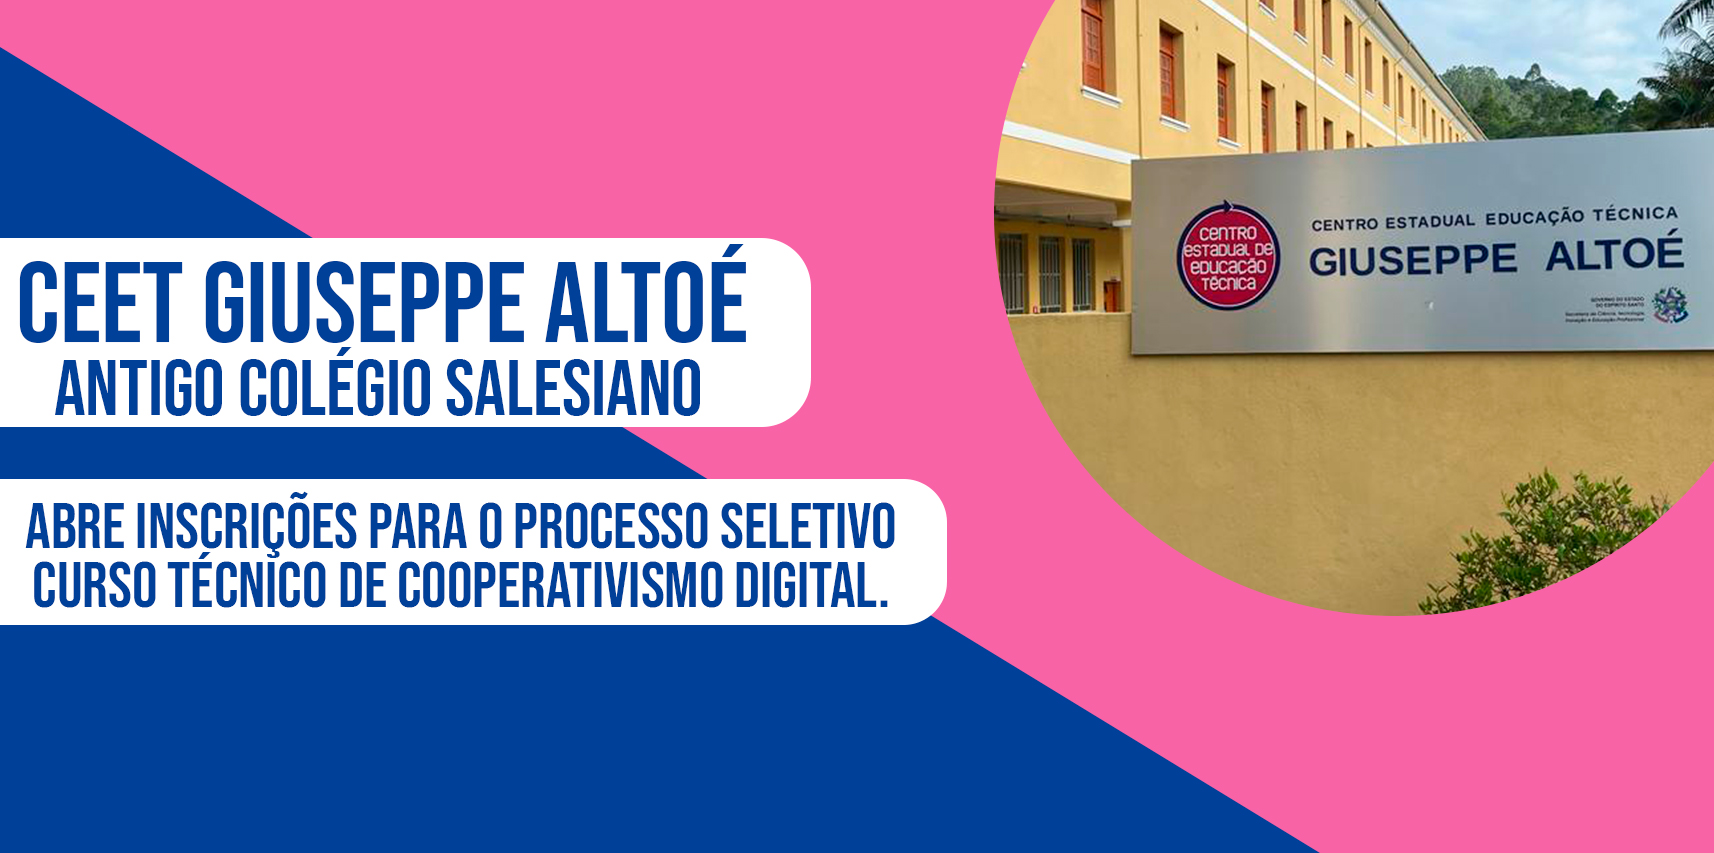 CEET Giuseppe Altoé abre inscrições para curso técnico de Cooperativismo Digital em Vargem Alta